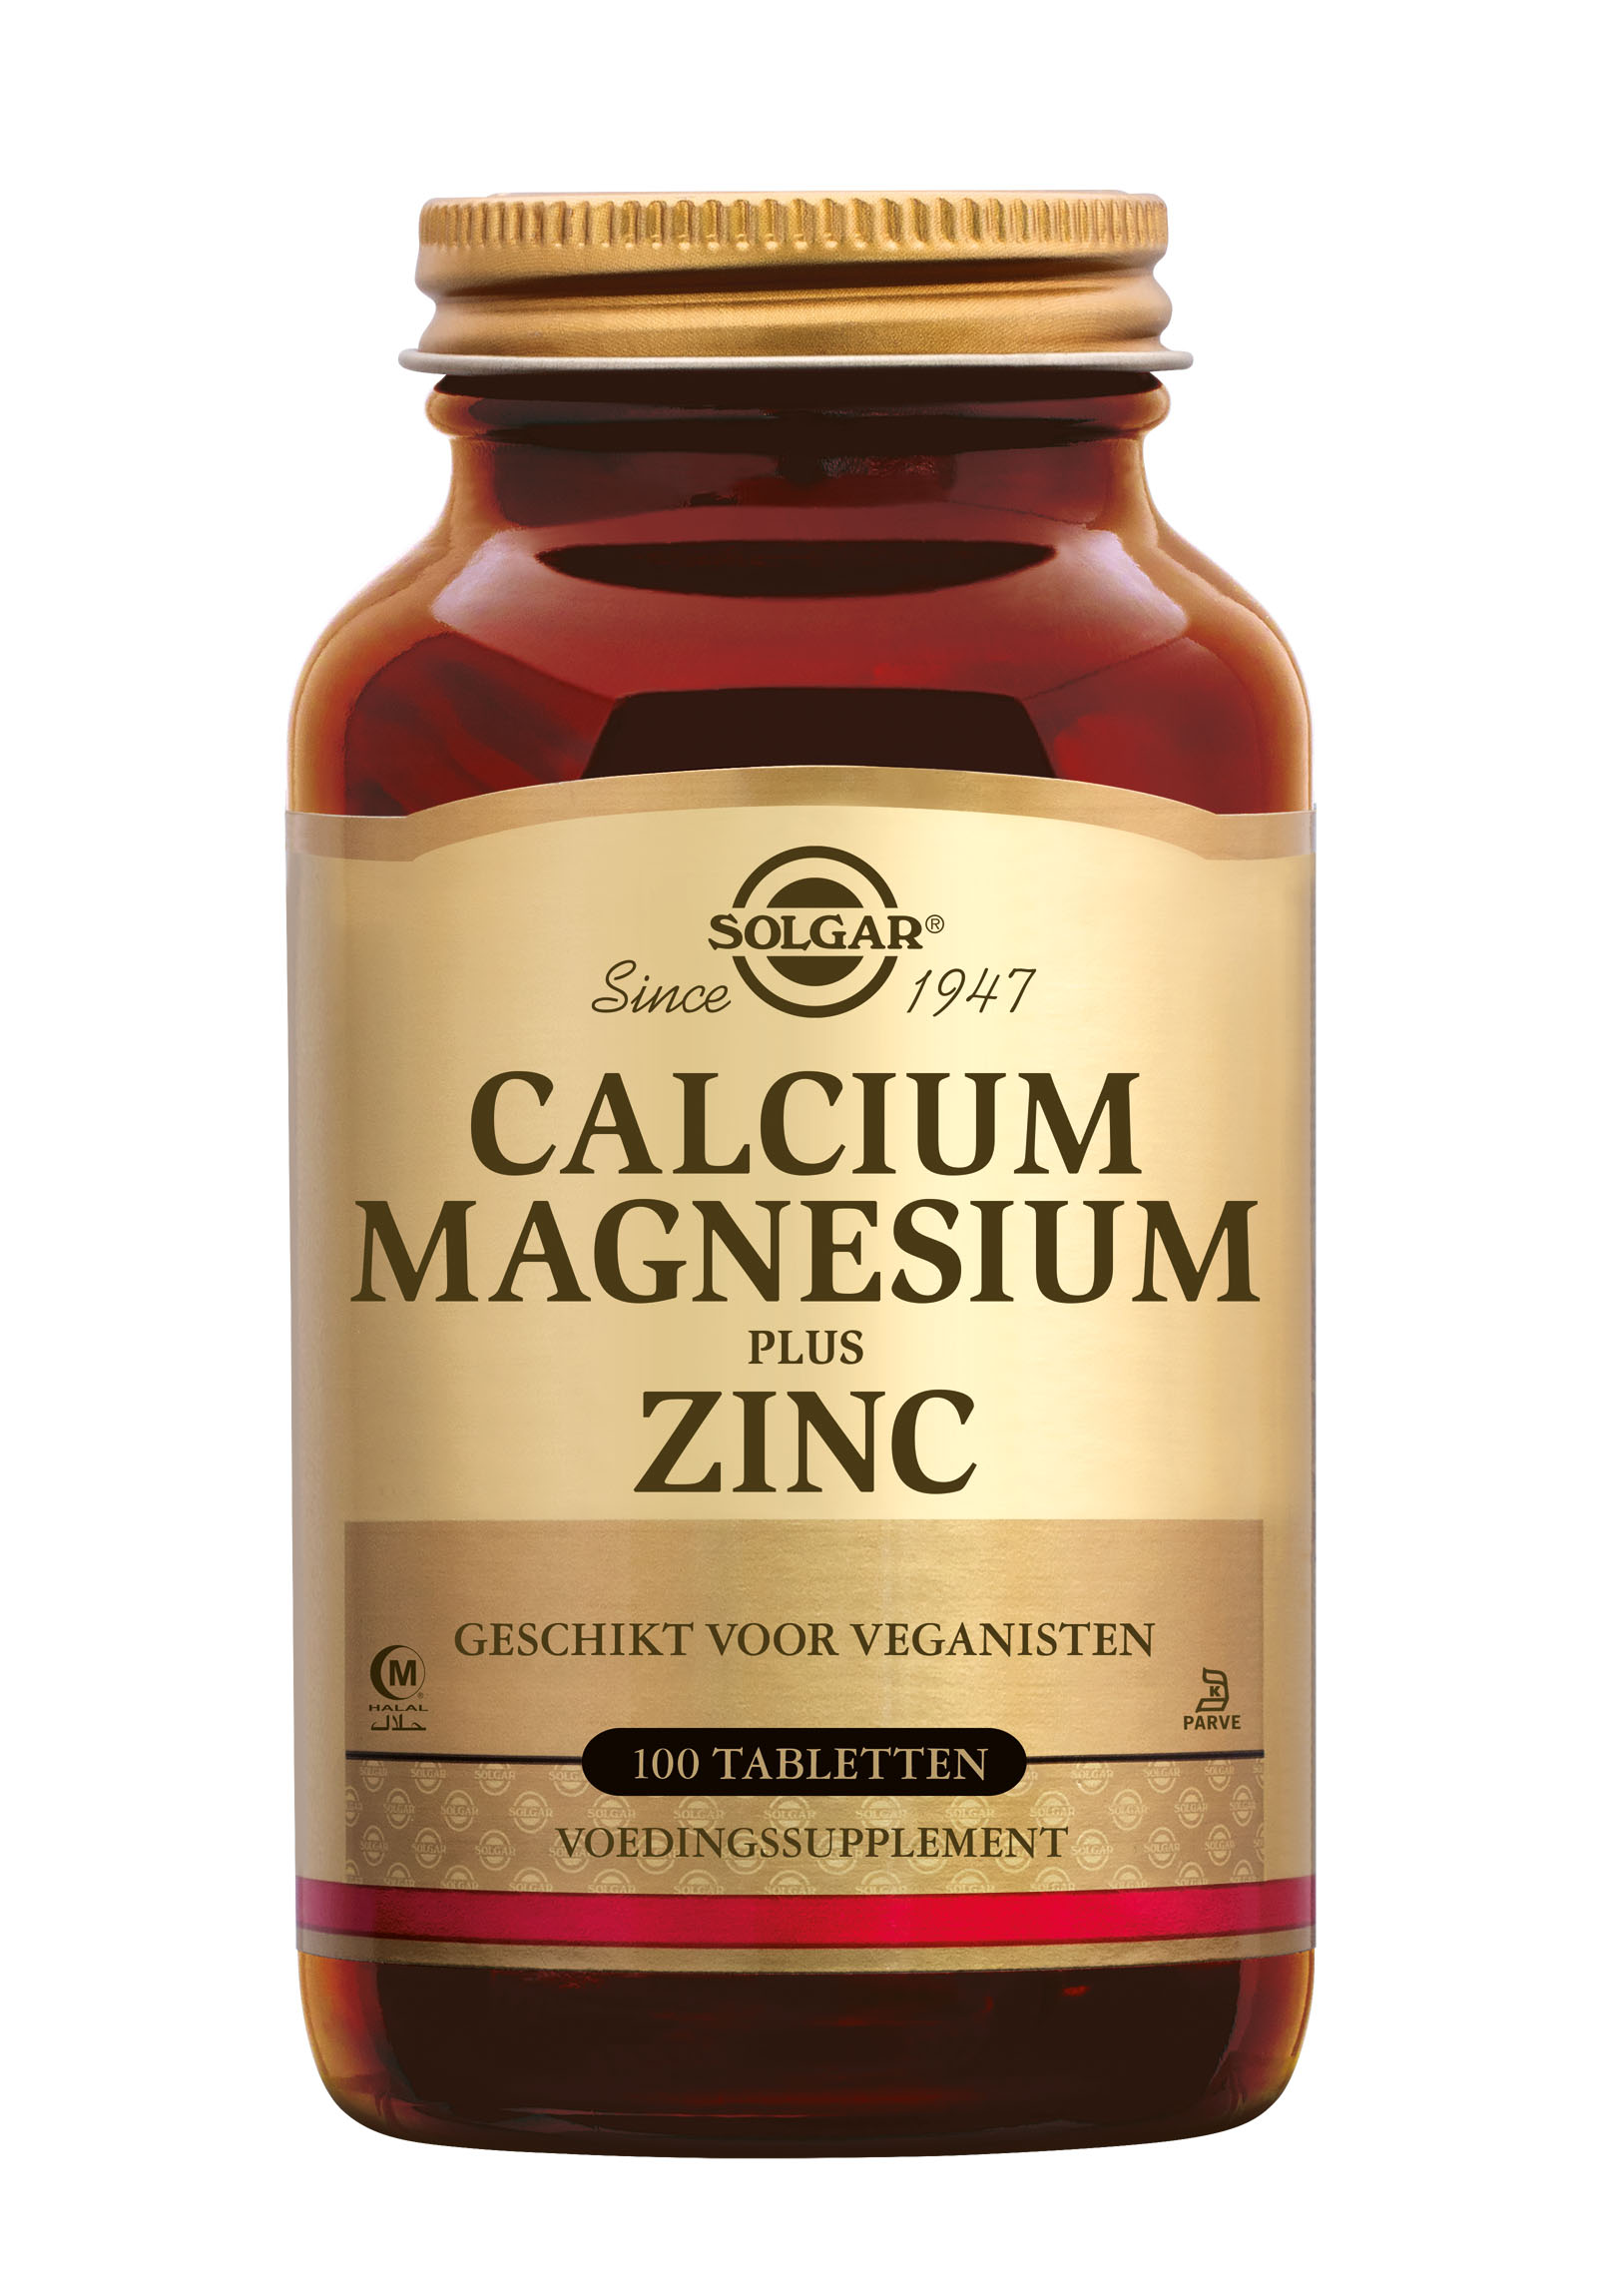 Solgar Calcium Magnesium plus Zinc (100 stuks)